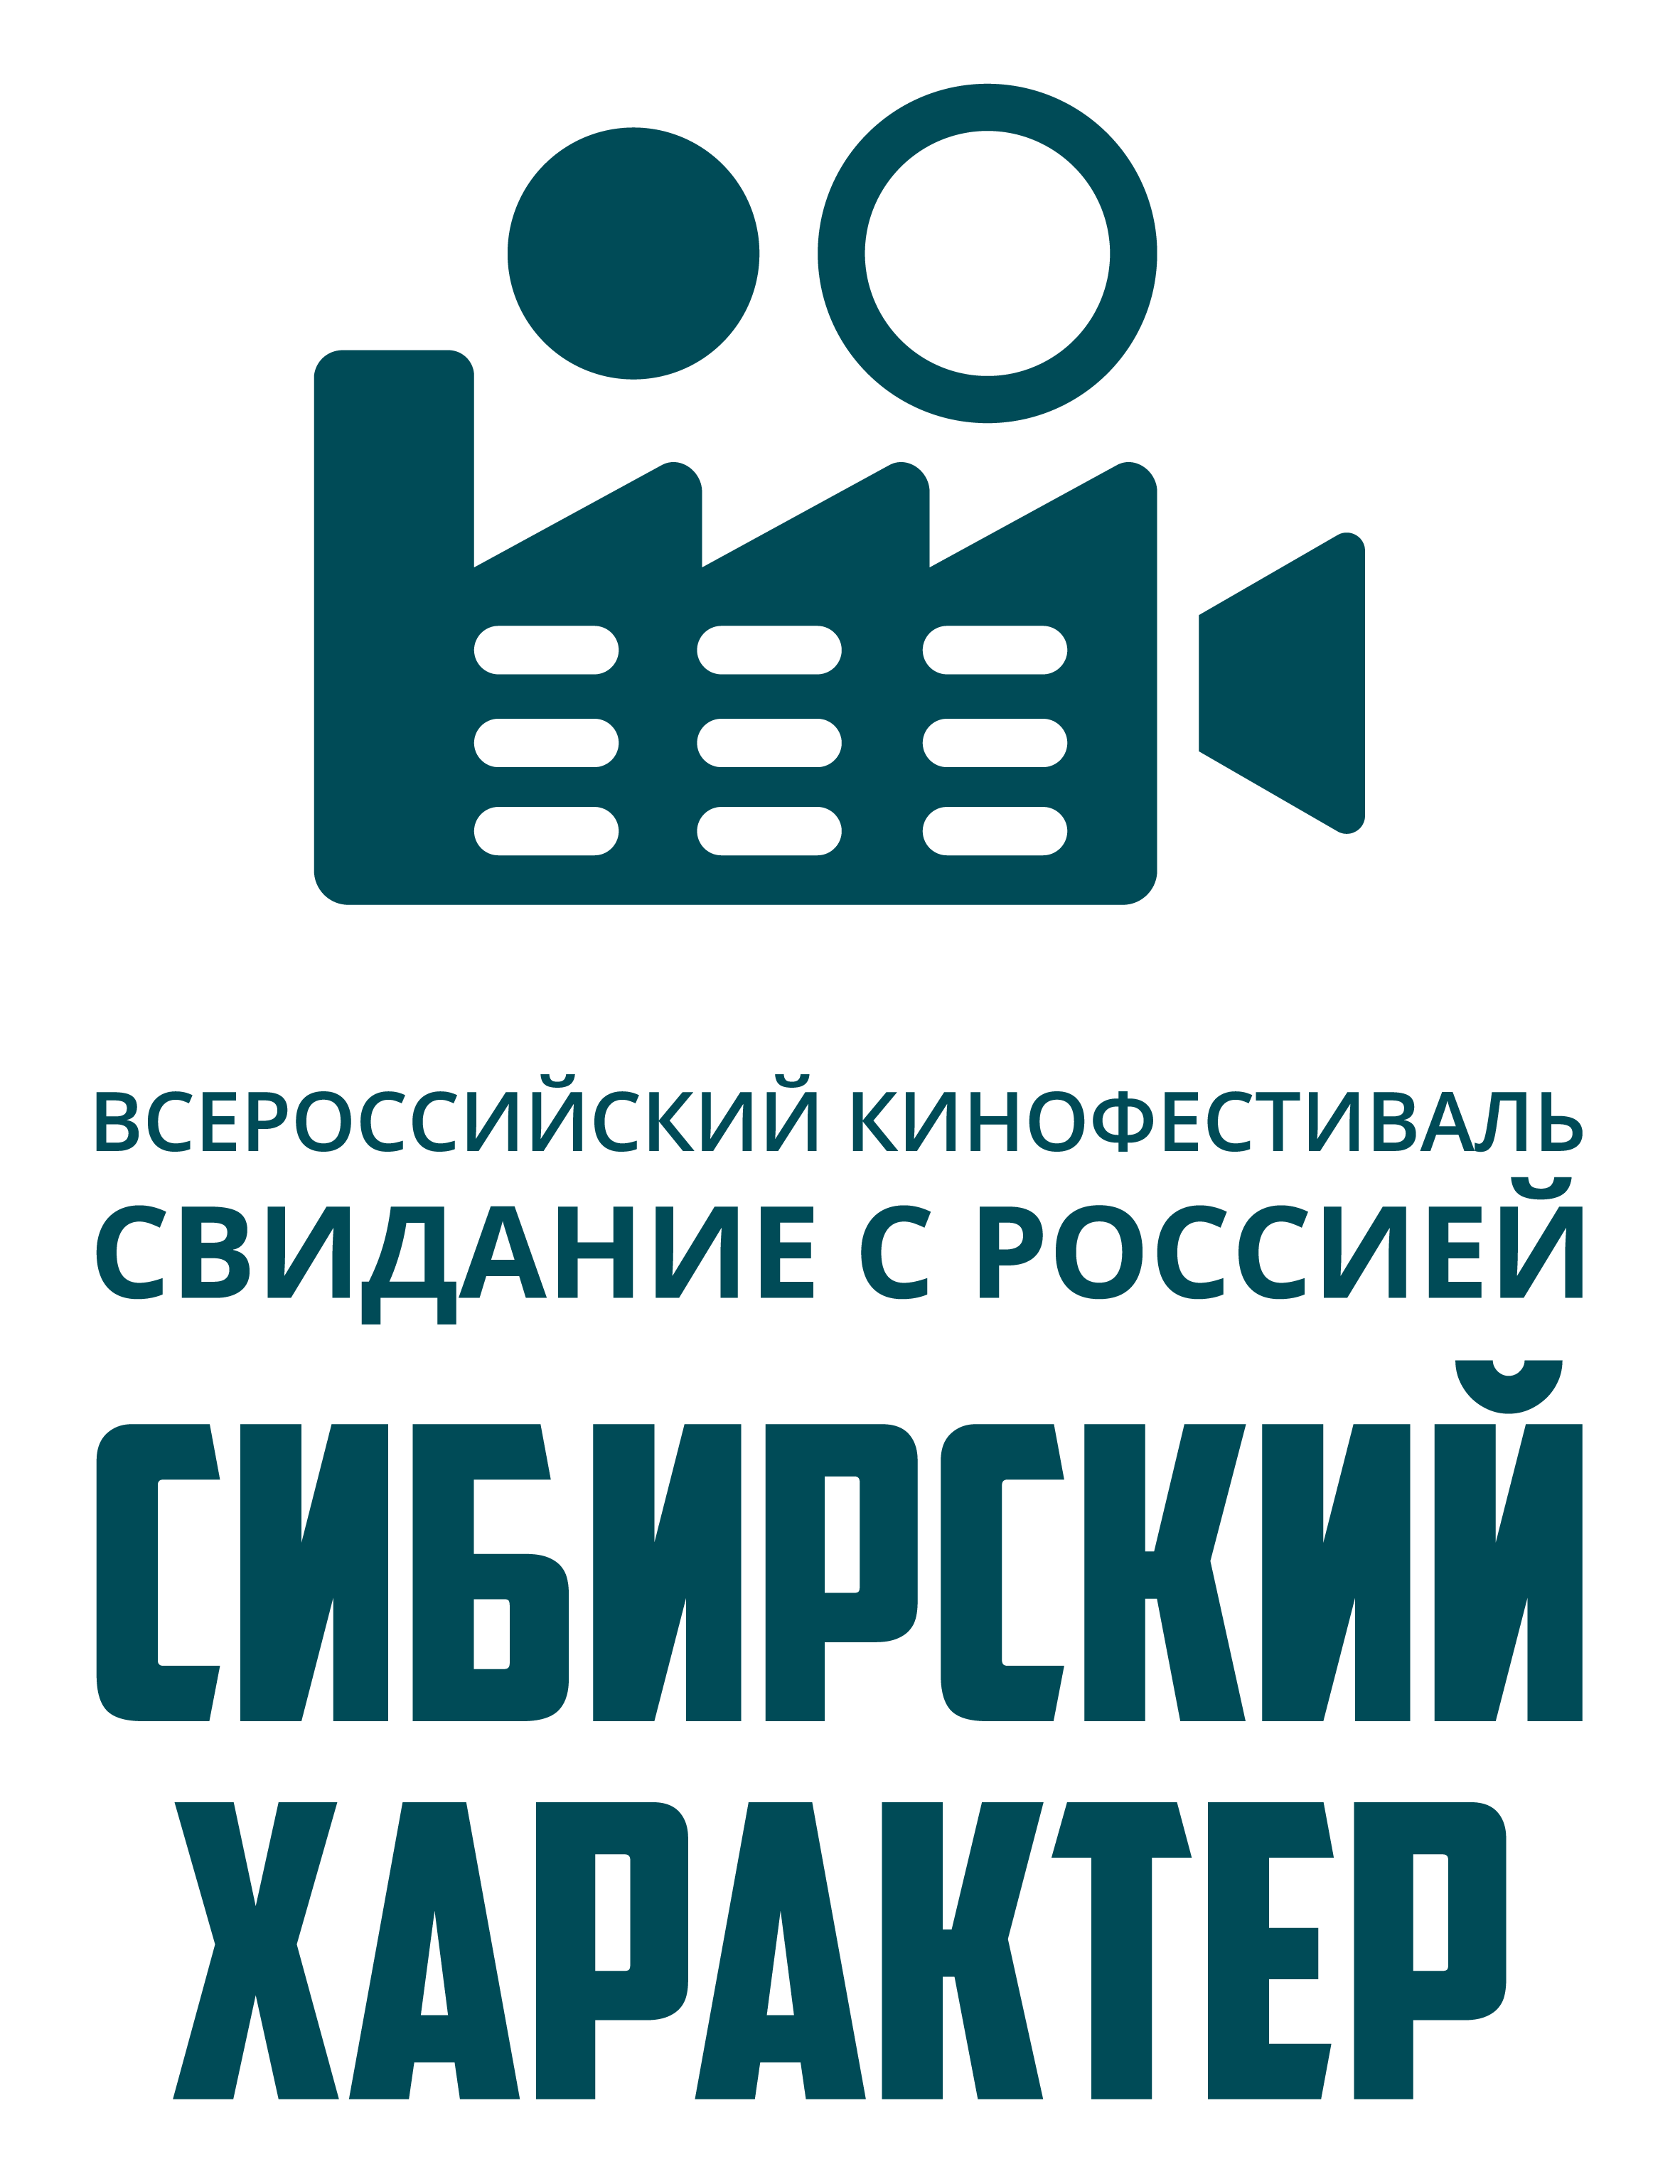 Всероссийский кинофестиваль «Свидание с Россией. Сибирский характер»